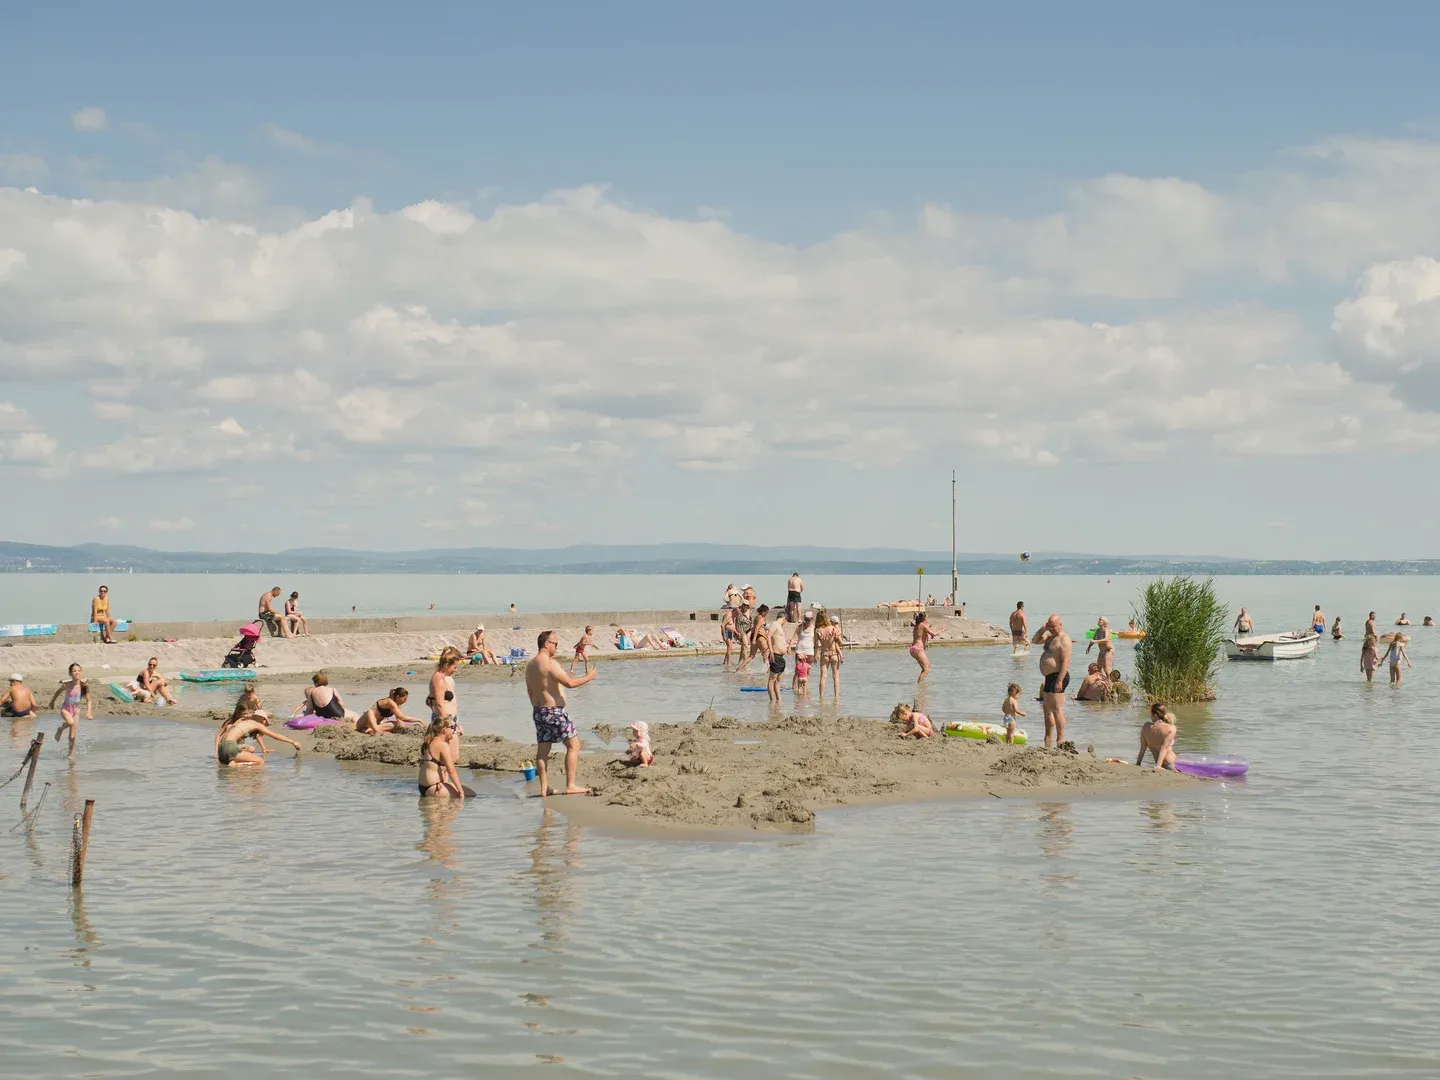 Fürdőzők az alacsony vízállású Balatonban a nyári kánikula idején. Siófok, Balaton, Veszprém megye Hőhullámok idején az emberek a városokból a vízpartok mellett hűsölnek. De a Balaton (Magyarország legnagyobb, 592km2 kiterjedésű természetes tava) vízszintje is folyamatosan csökkent. Májusban a tó átlagos vízszintje 105 cm körül volt. Augusztus végére 78 cm-re csökkent.